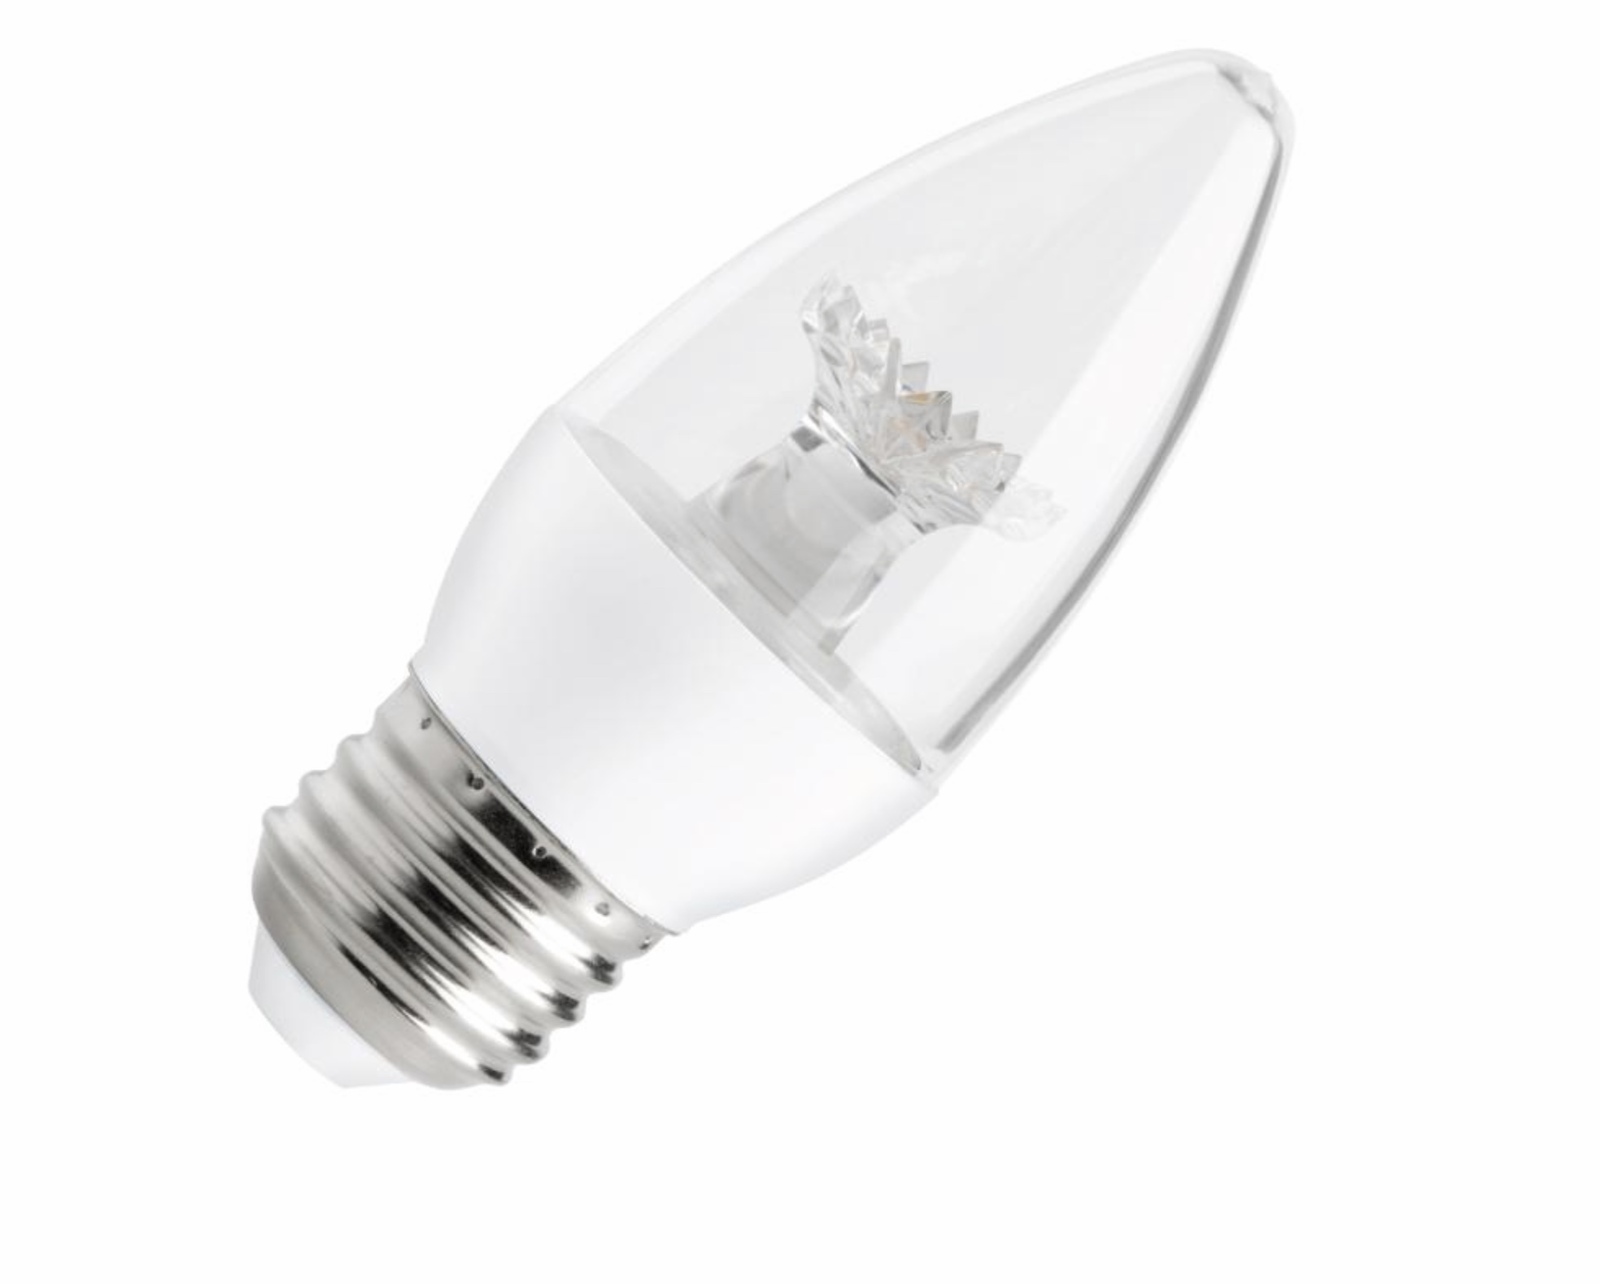 Ecosmart 40-Watt Equivalent B11 Dimmable LED Light Bulb Soft White (12